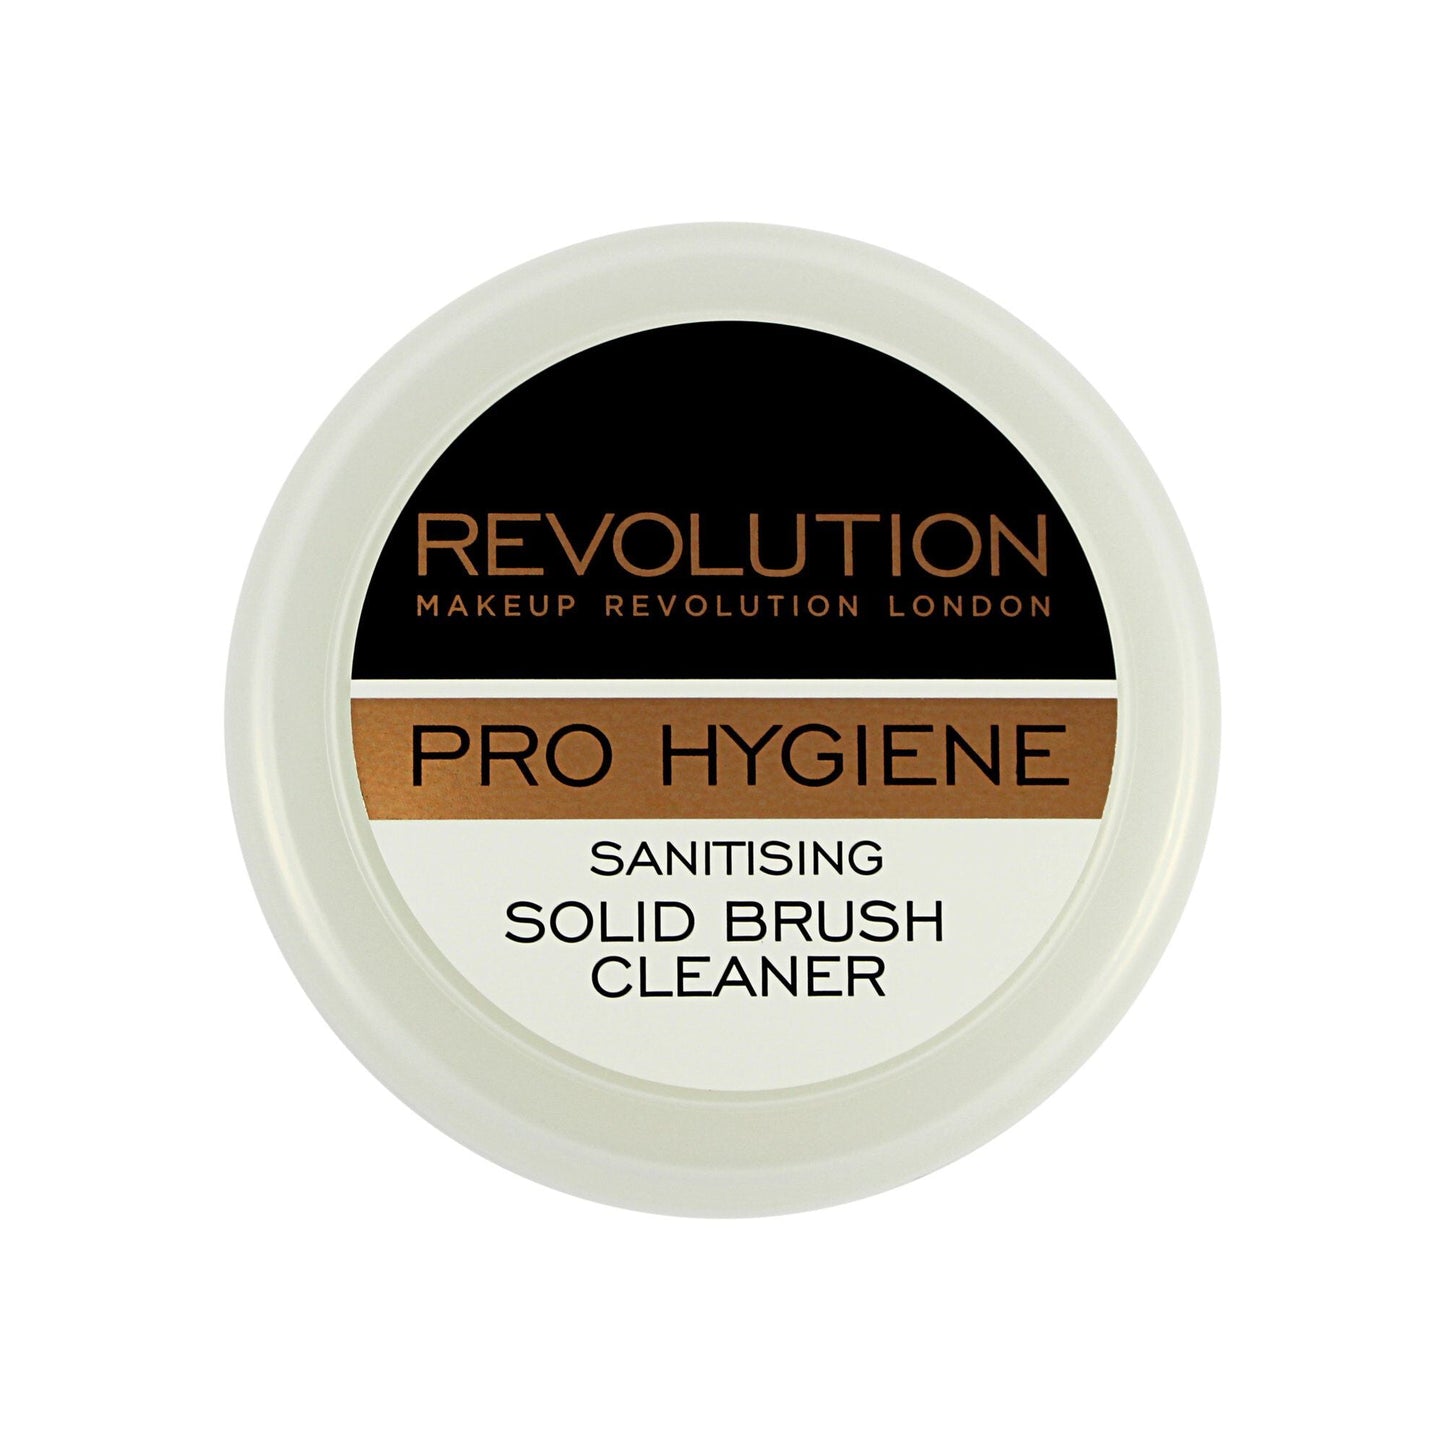 Makeup Revolution Solid Brush Cleaner 100g